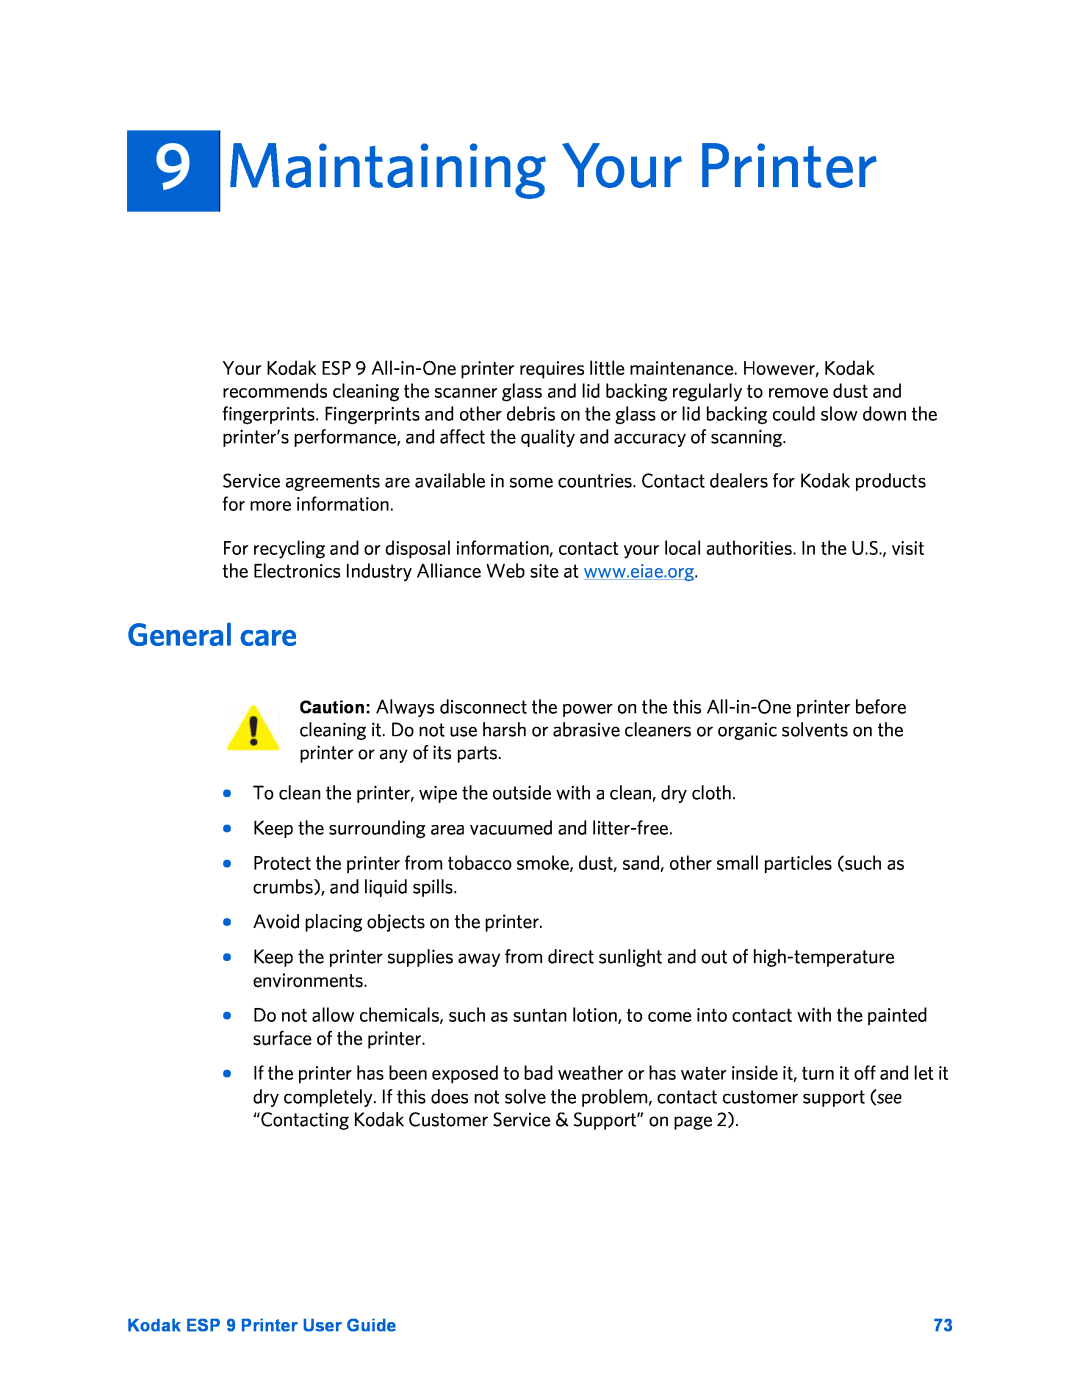 Kodak ESP 9 manual Maintaining Your Printer, General care 